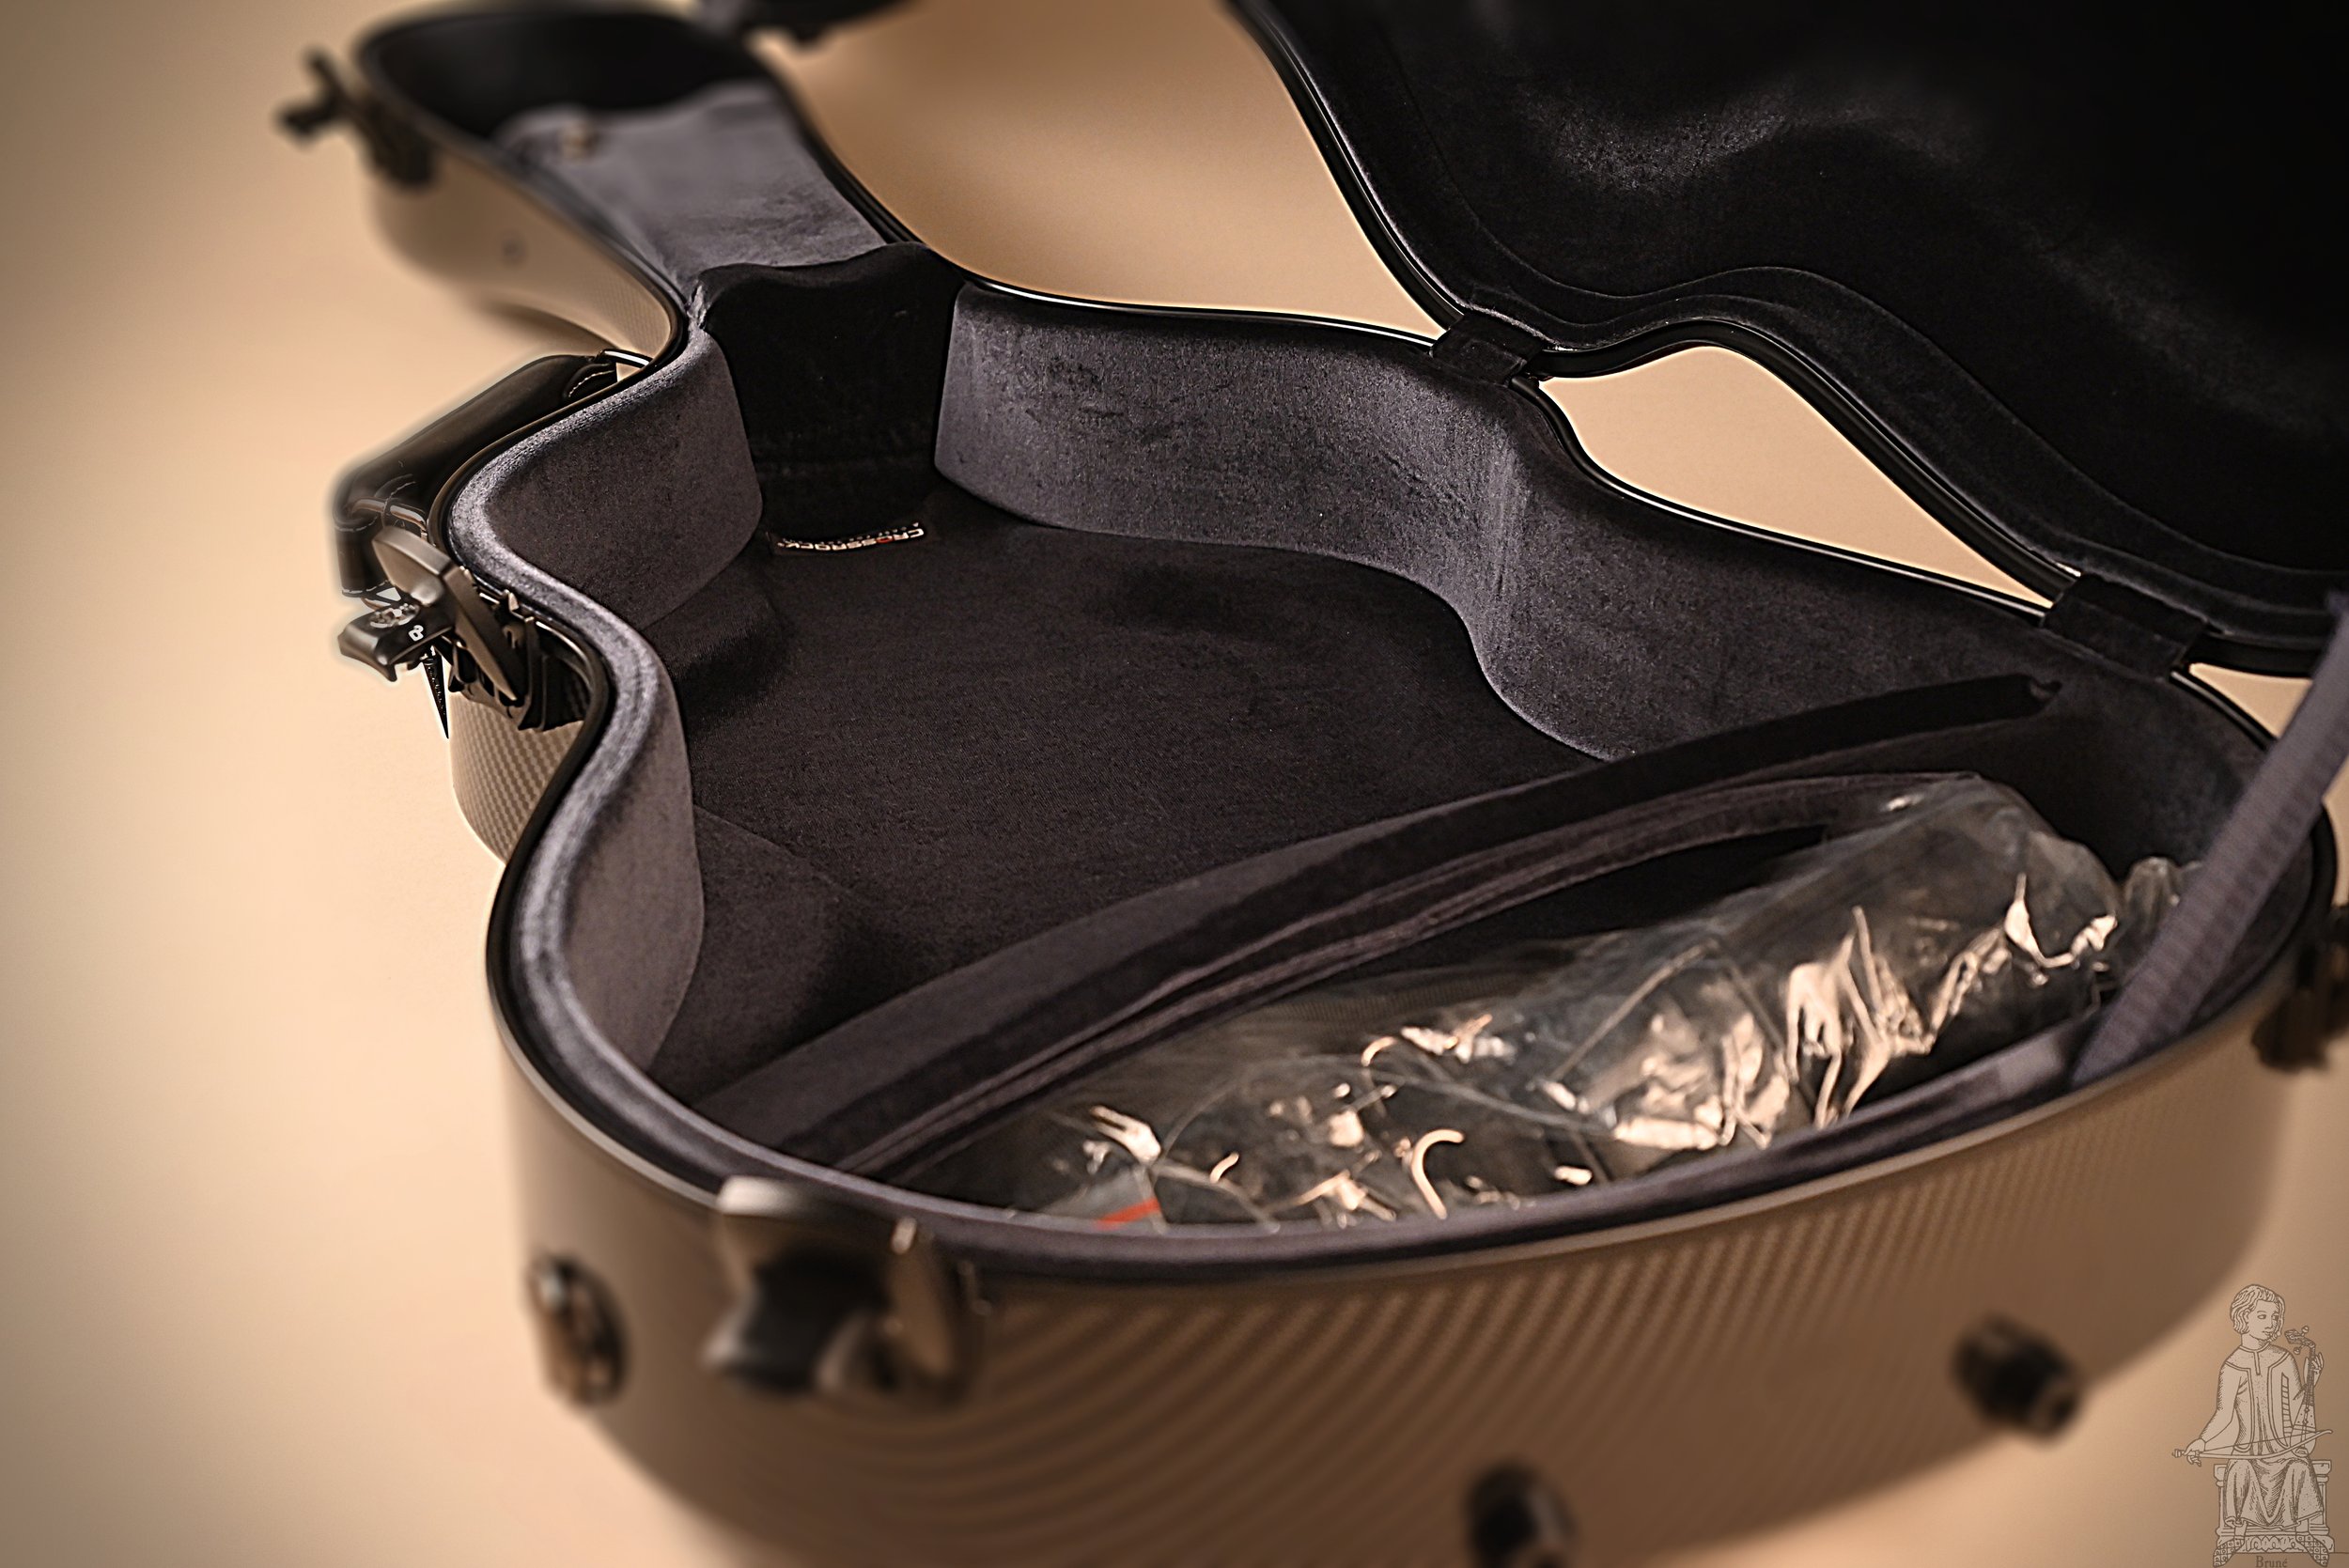 Best guitar cases — M. E. Brune, Luthier